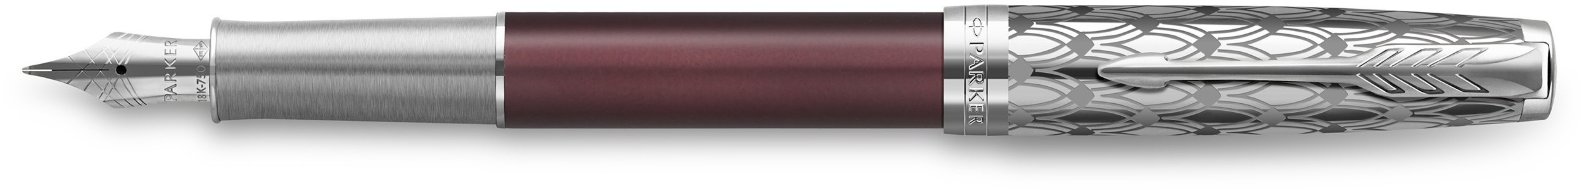 Ручка перьевая Parker Sonnet Premium F537 Metal Red CT F перо золото 18K